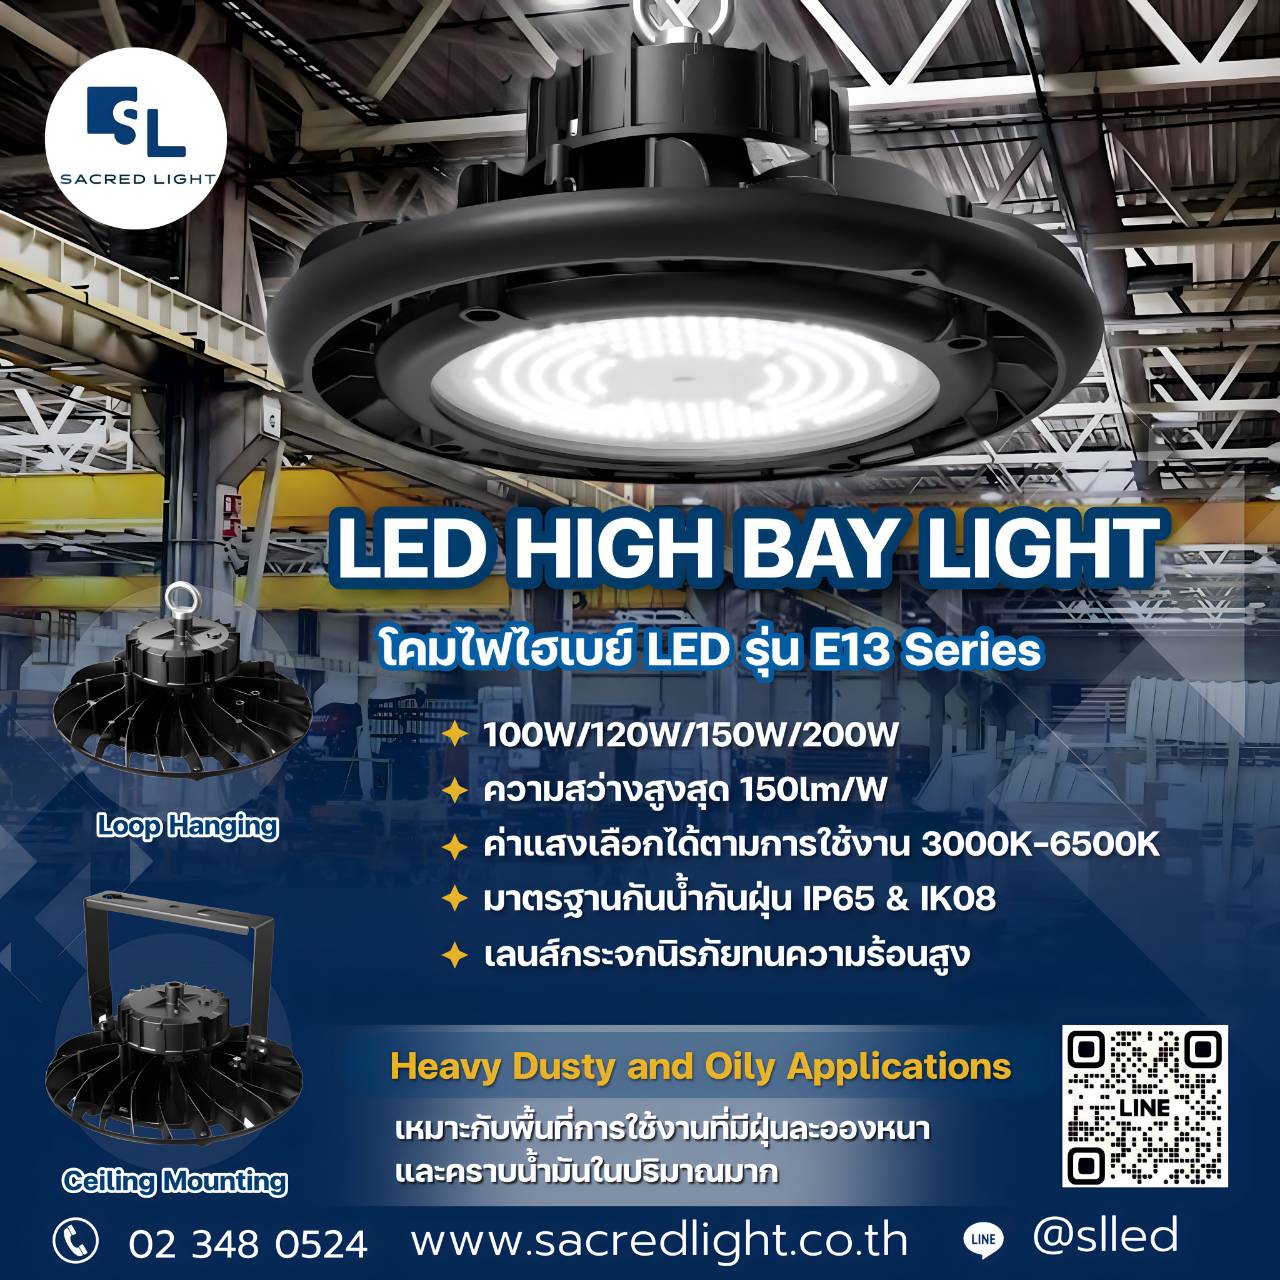 โคมไฟไฮเบย์ LED รุ่น E12 Series (LED HIGH BAY LIGHT)